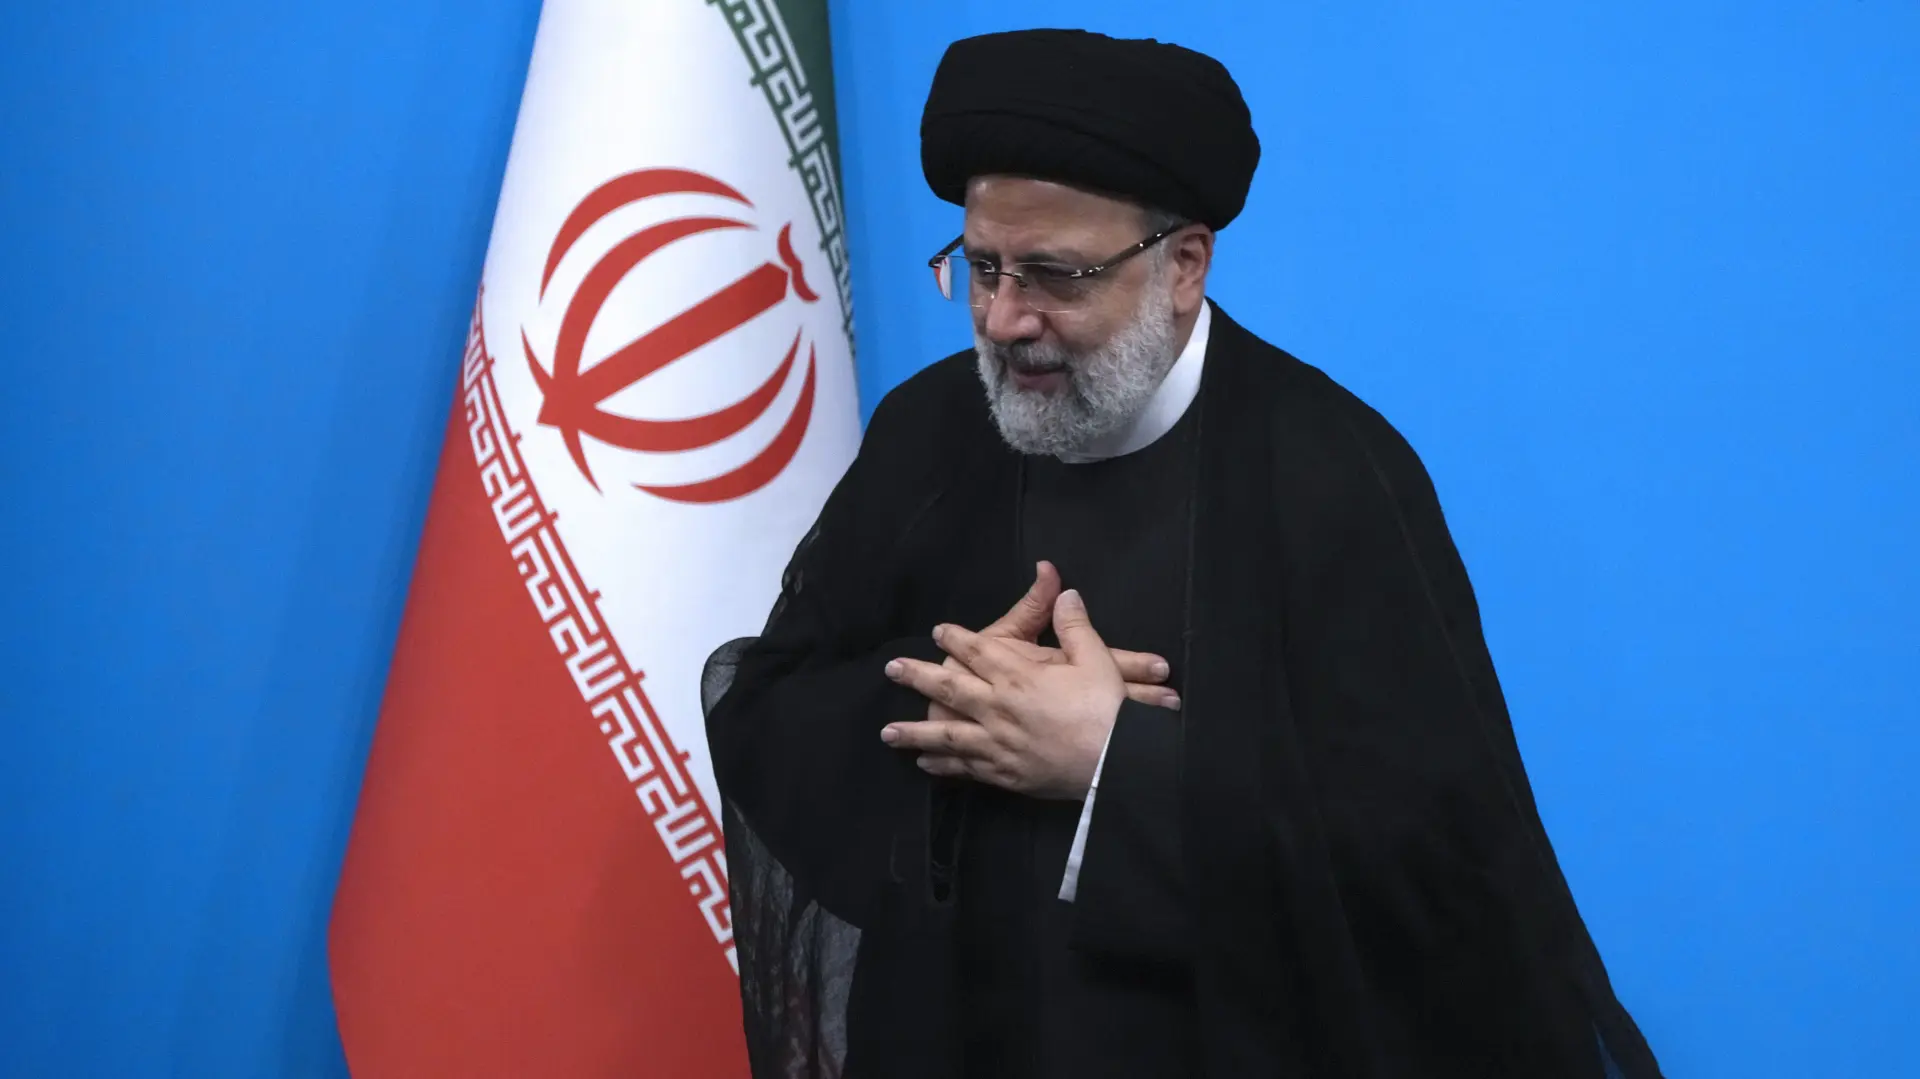 Tan2023-08-2912142344_1 ibrahim raisi iranski predsednik AP PhotoVahid Salemi-652c3199a3c9d.webp